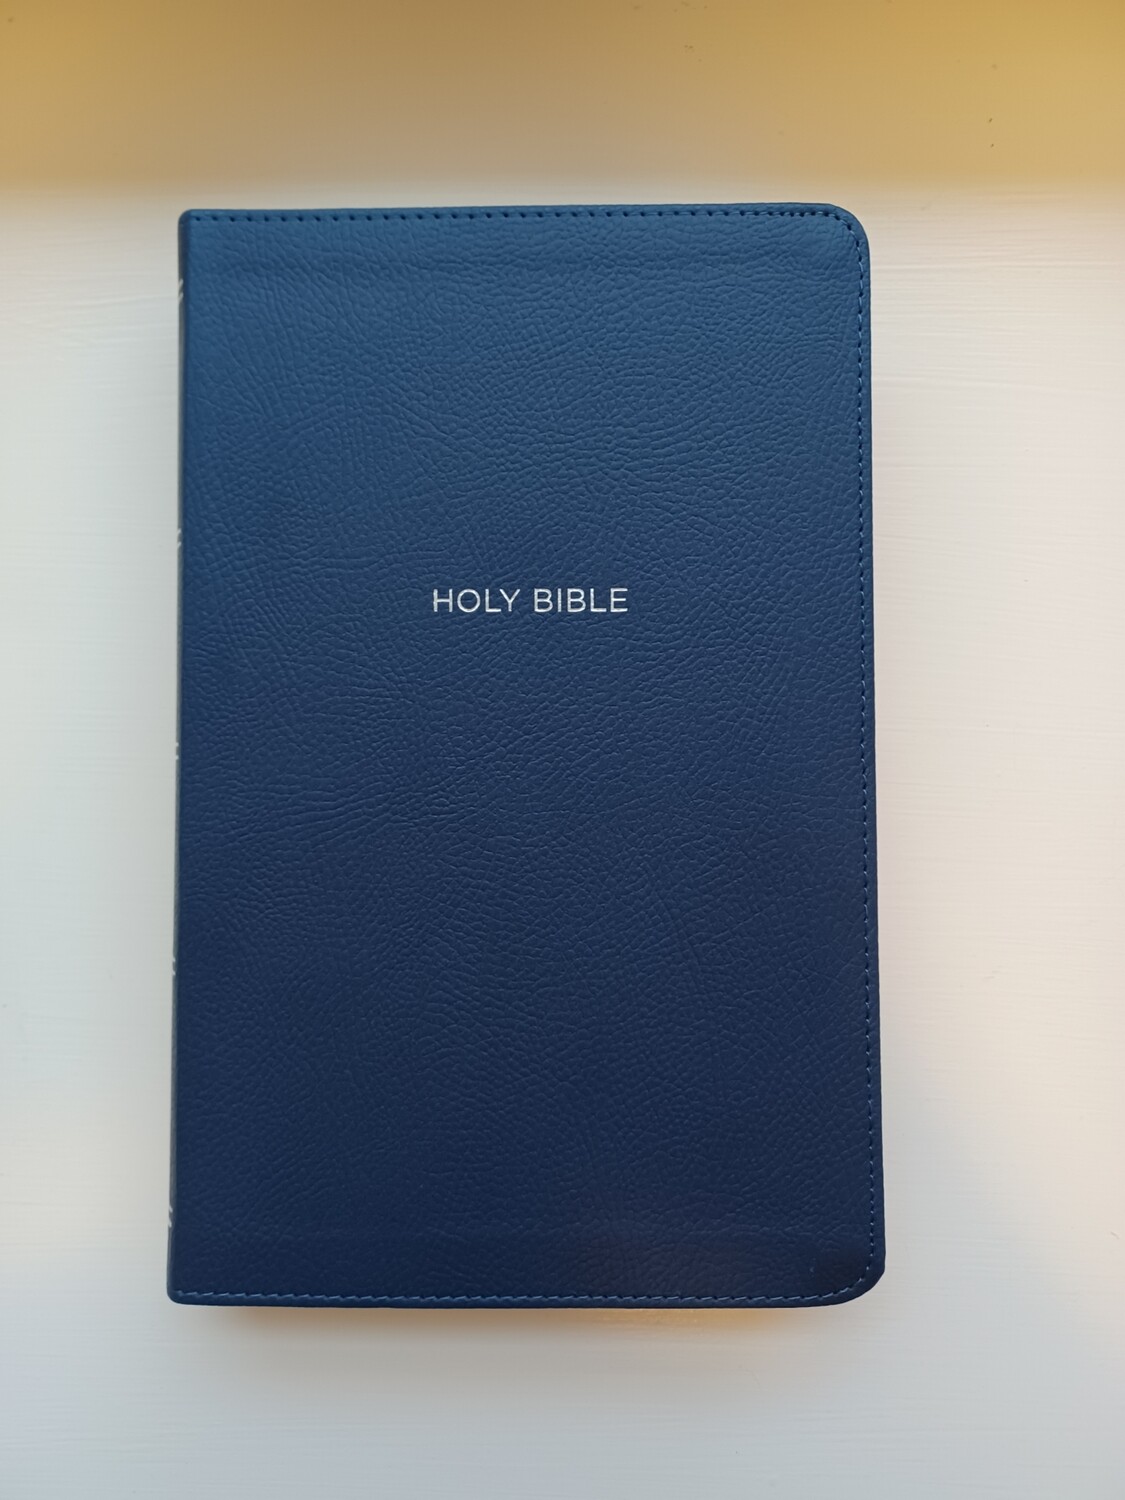 NKJV Personal Size Bible